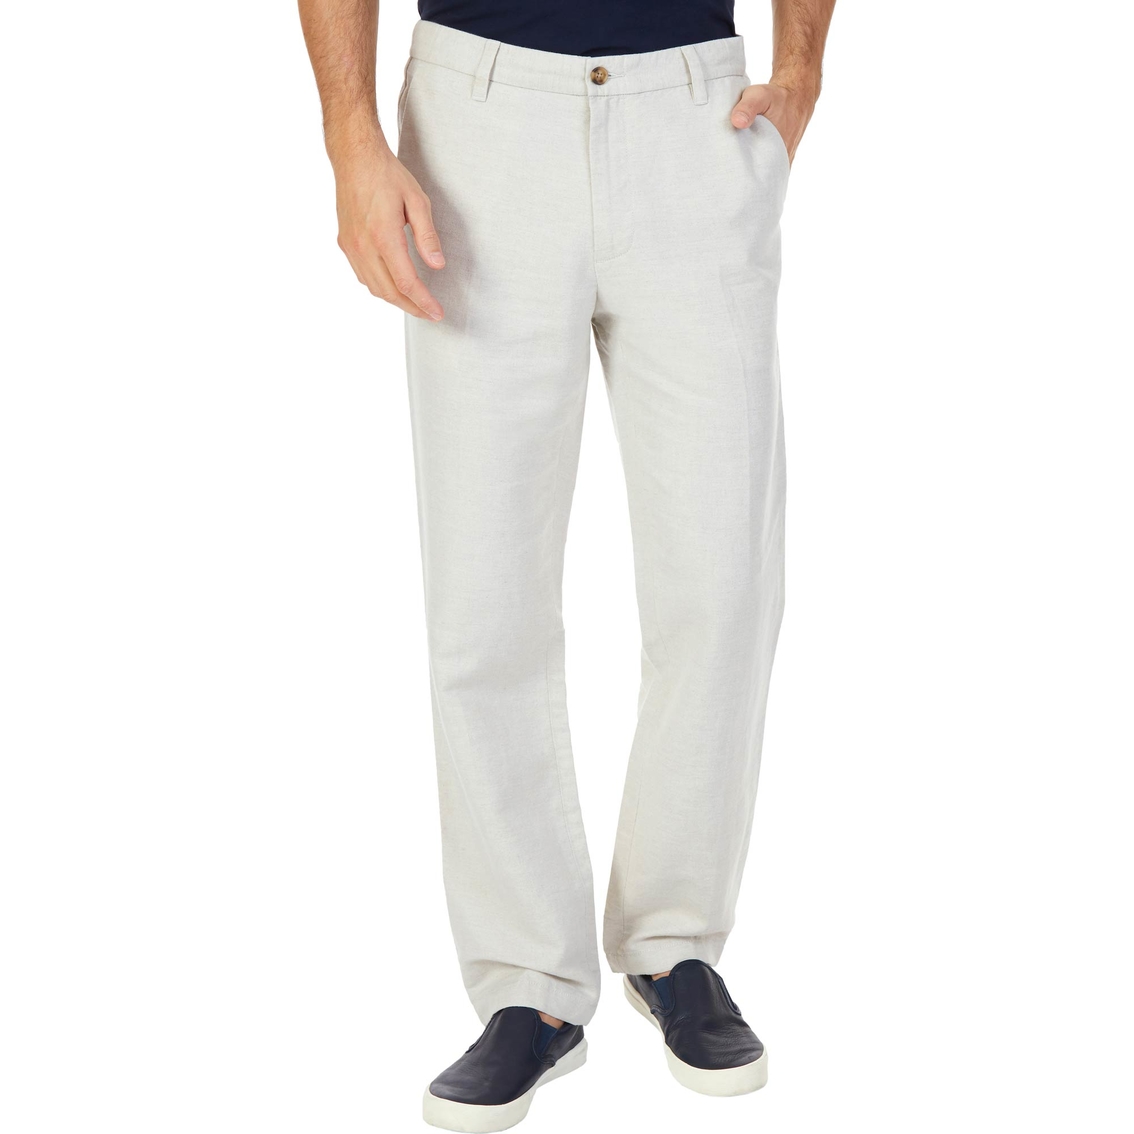 Nautica Classic Fit Linen Blend Pants | Pants | Clothing & Accessories ...